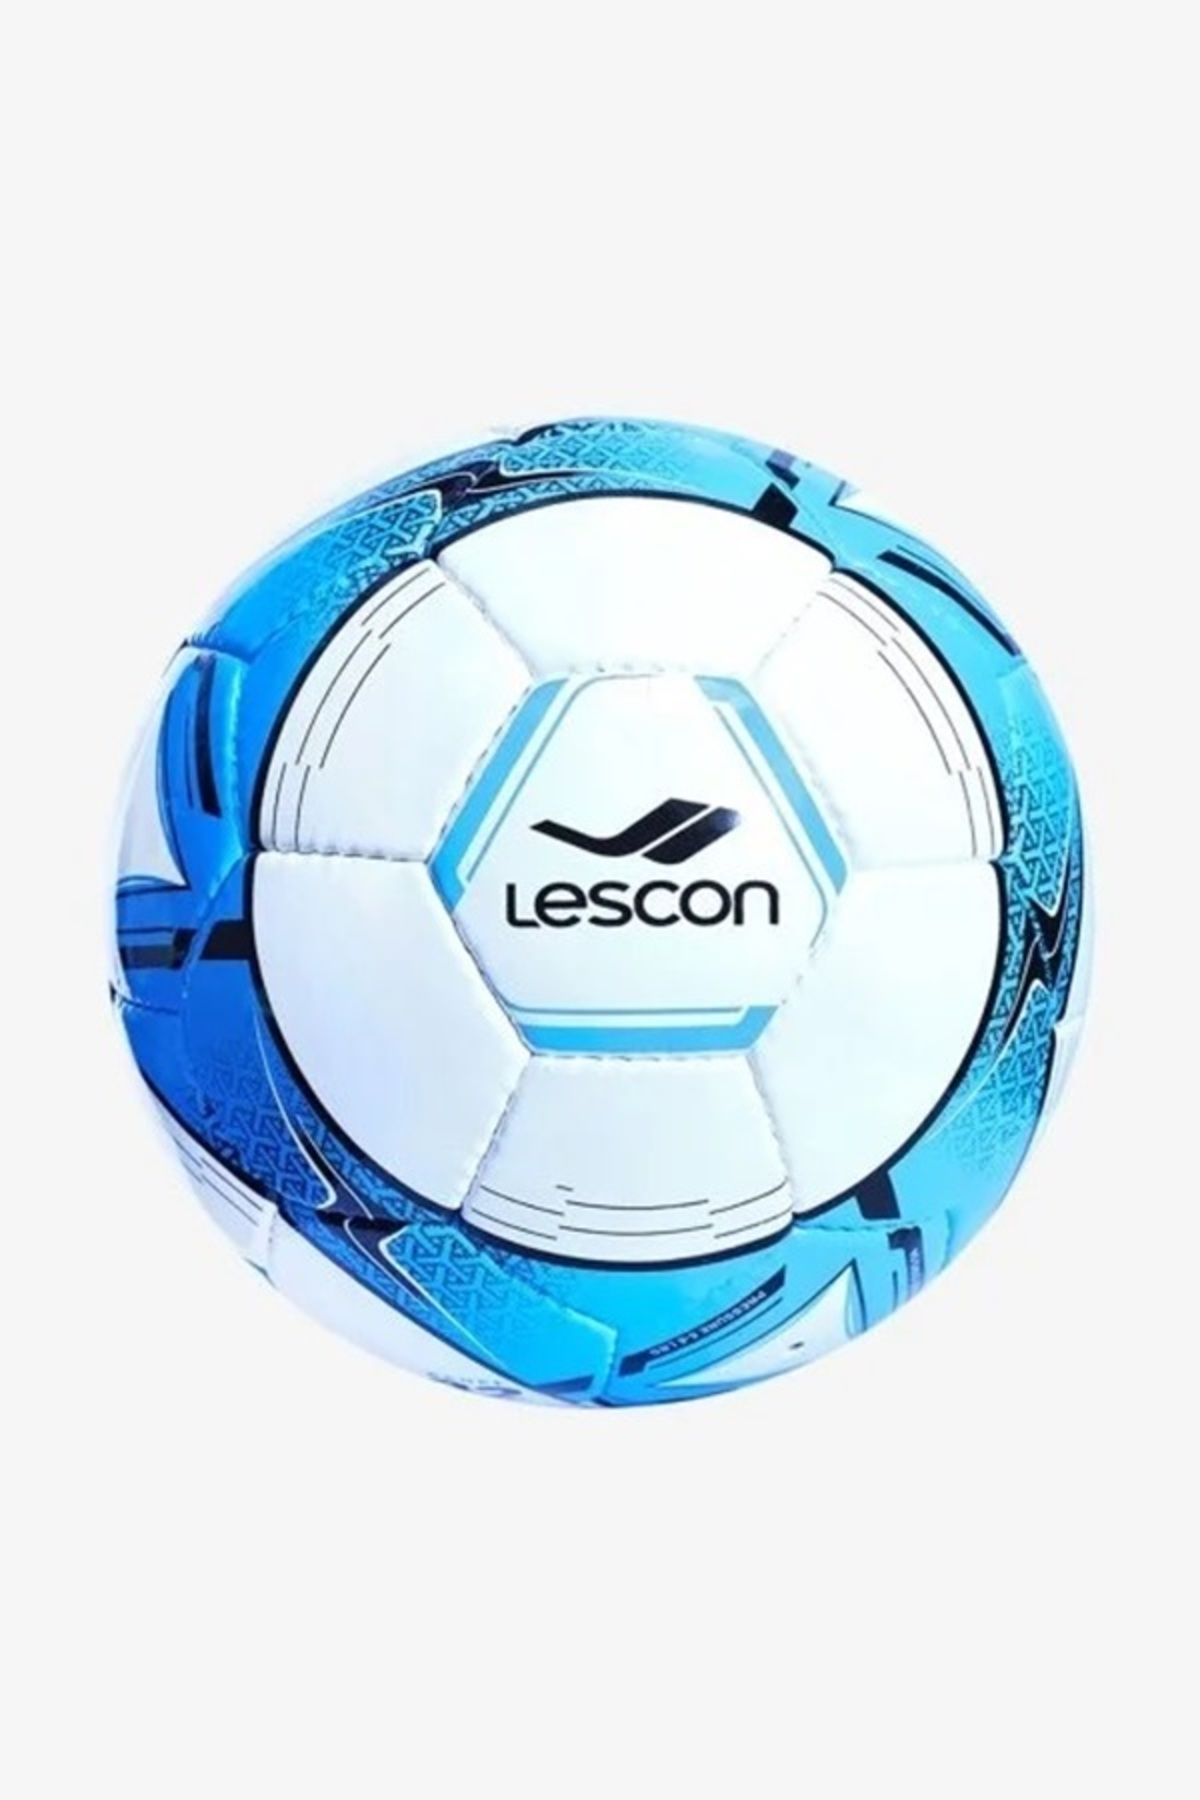 Lescon La-3532 Beyaz Mavi Futbol Topu 5 Numara